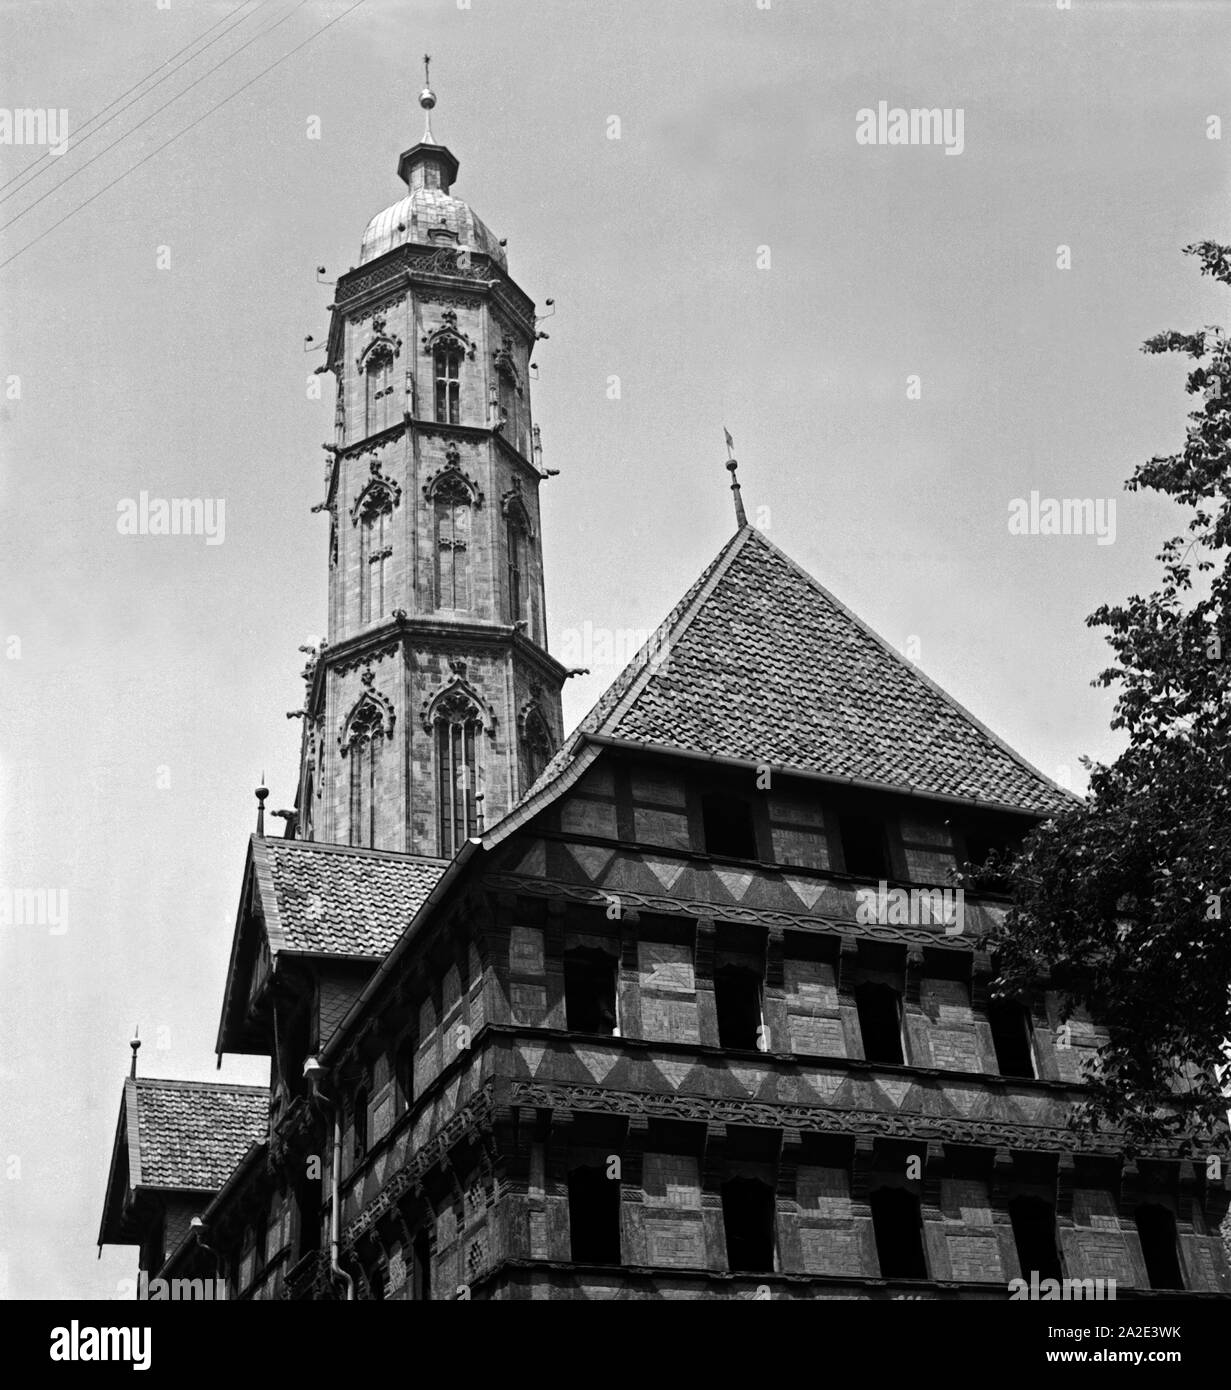 Der Glockenturm St. Andreaskirche überragt die Häuser in der Neustadt von Braunschweig, Deutschland 1930er Jahre. The belfry of the St. Andrew's church overlapping the houses of Braunschweig, Germany 1930s. Stock Photo